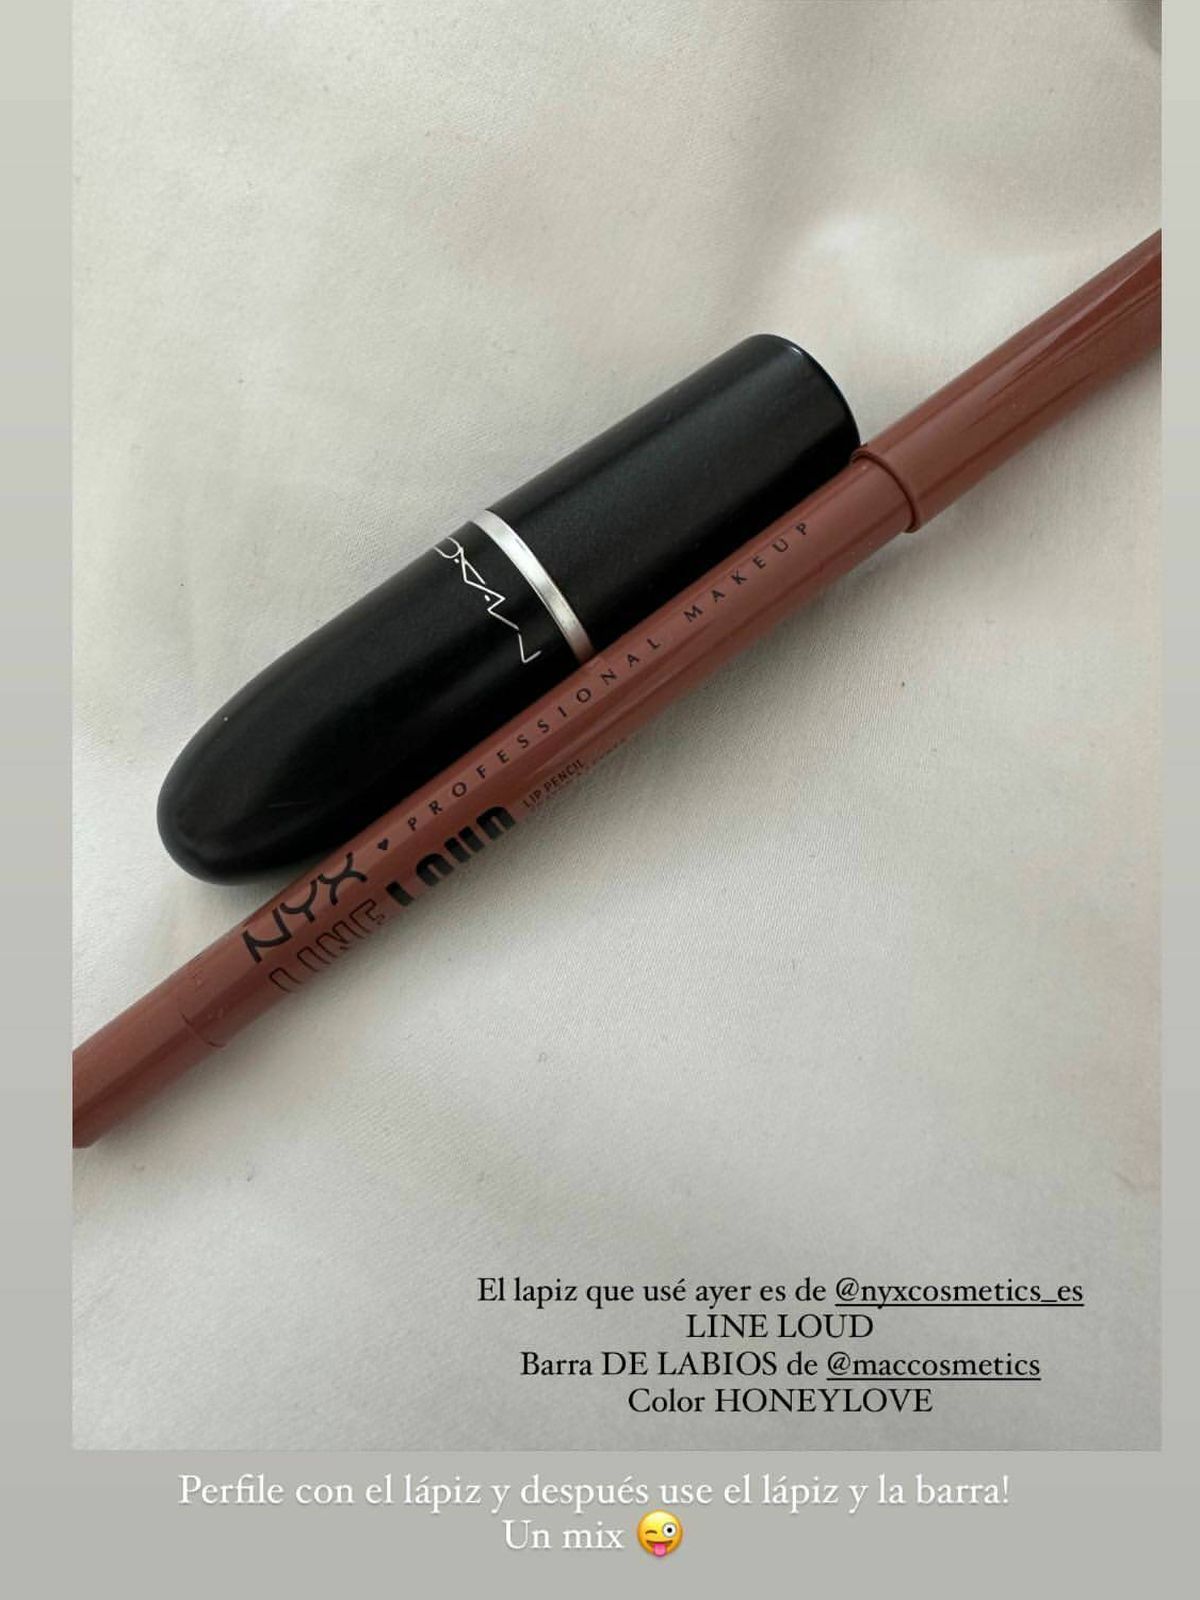 El perfilador y el labial utilizados en el maquillaje de Vicky Martín Berrocal. (Instagram/@vickymartinberrocal)